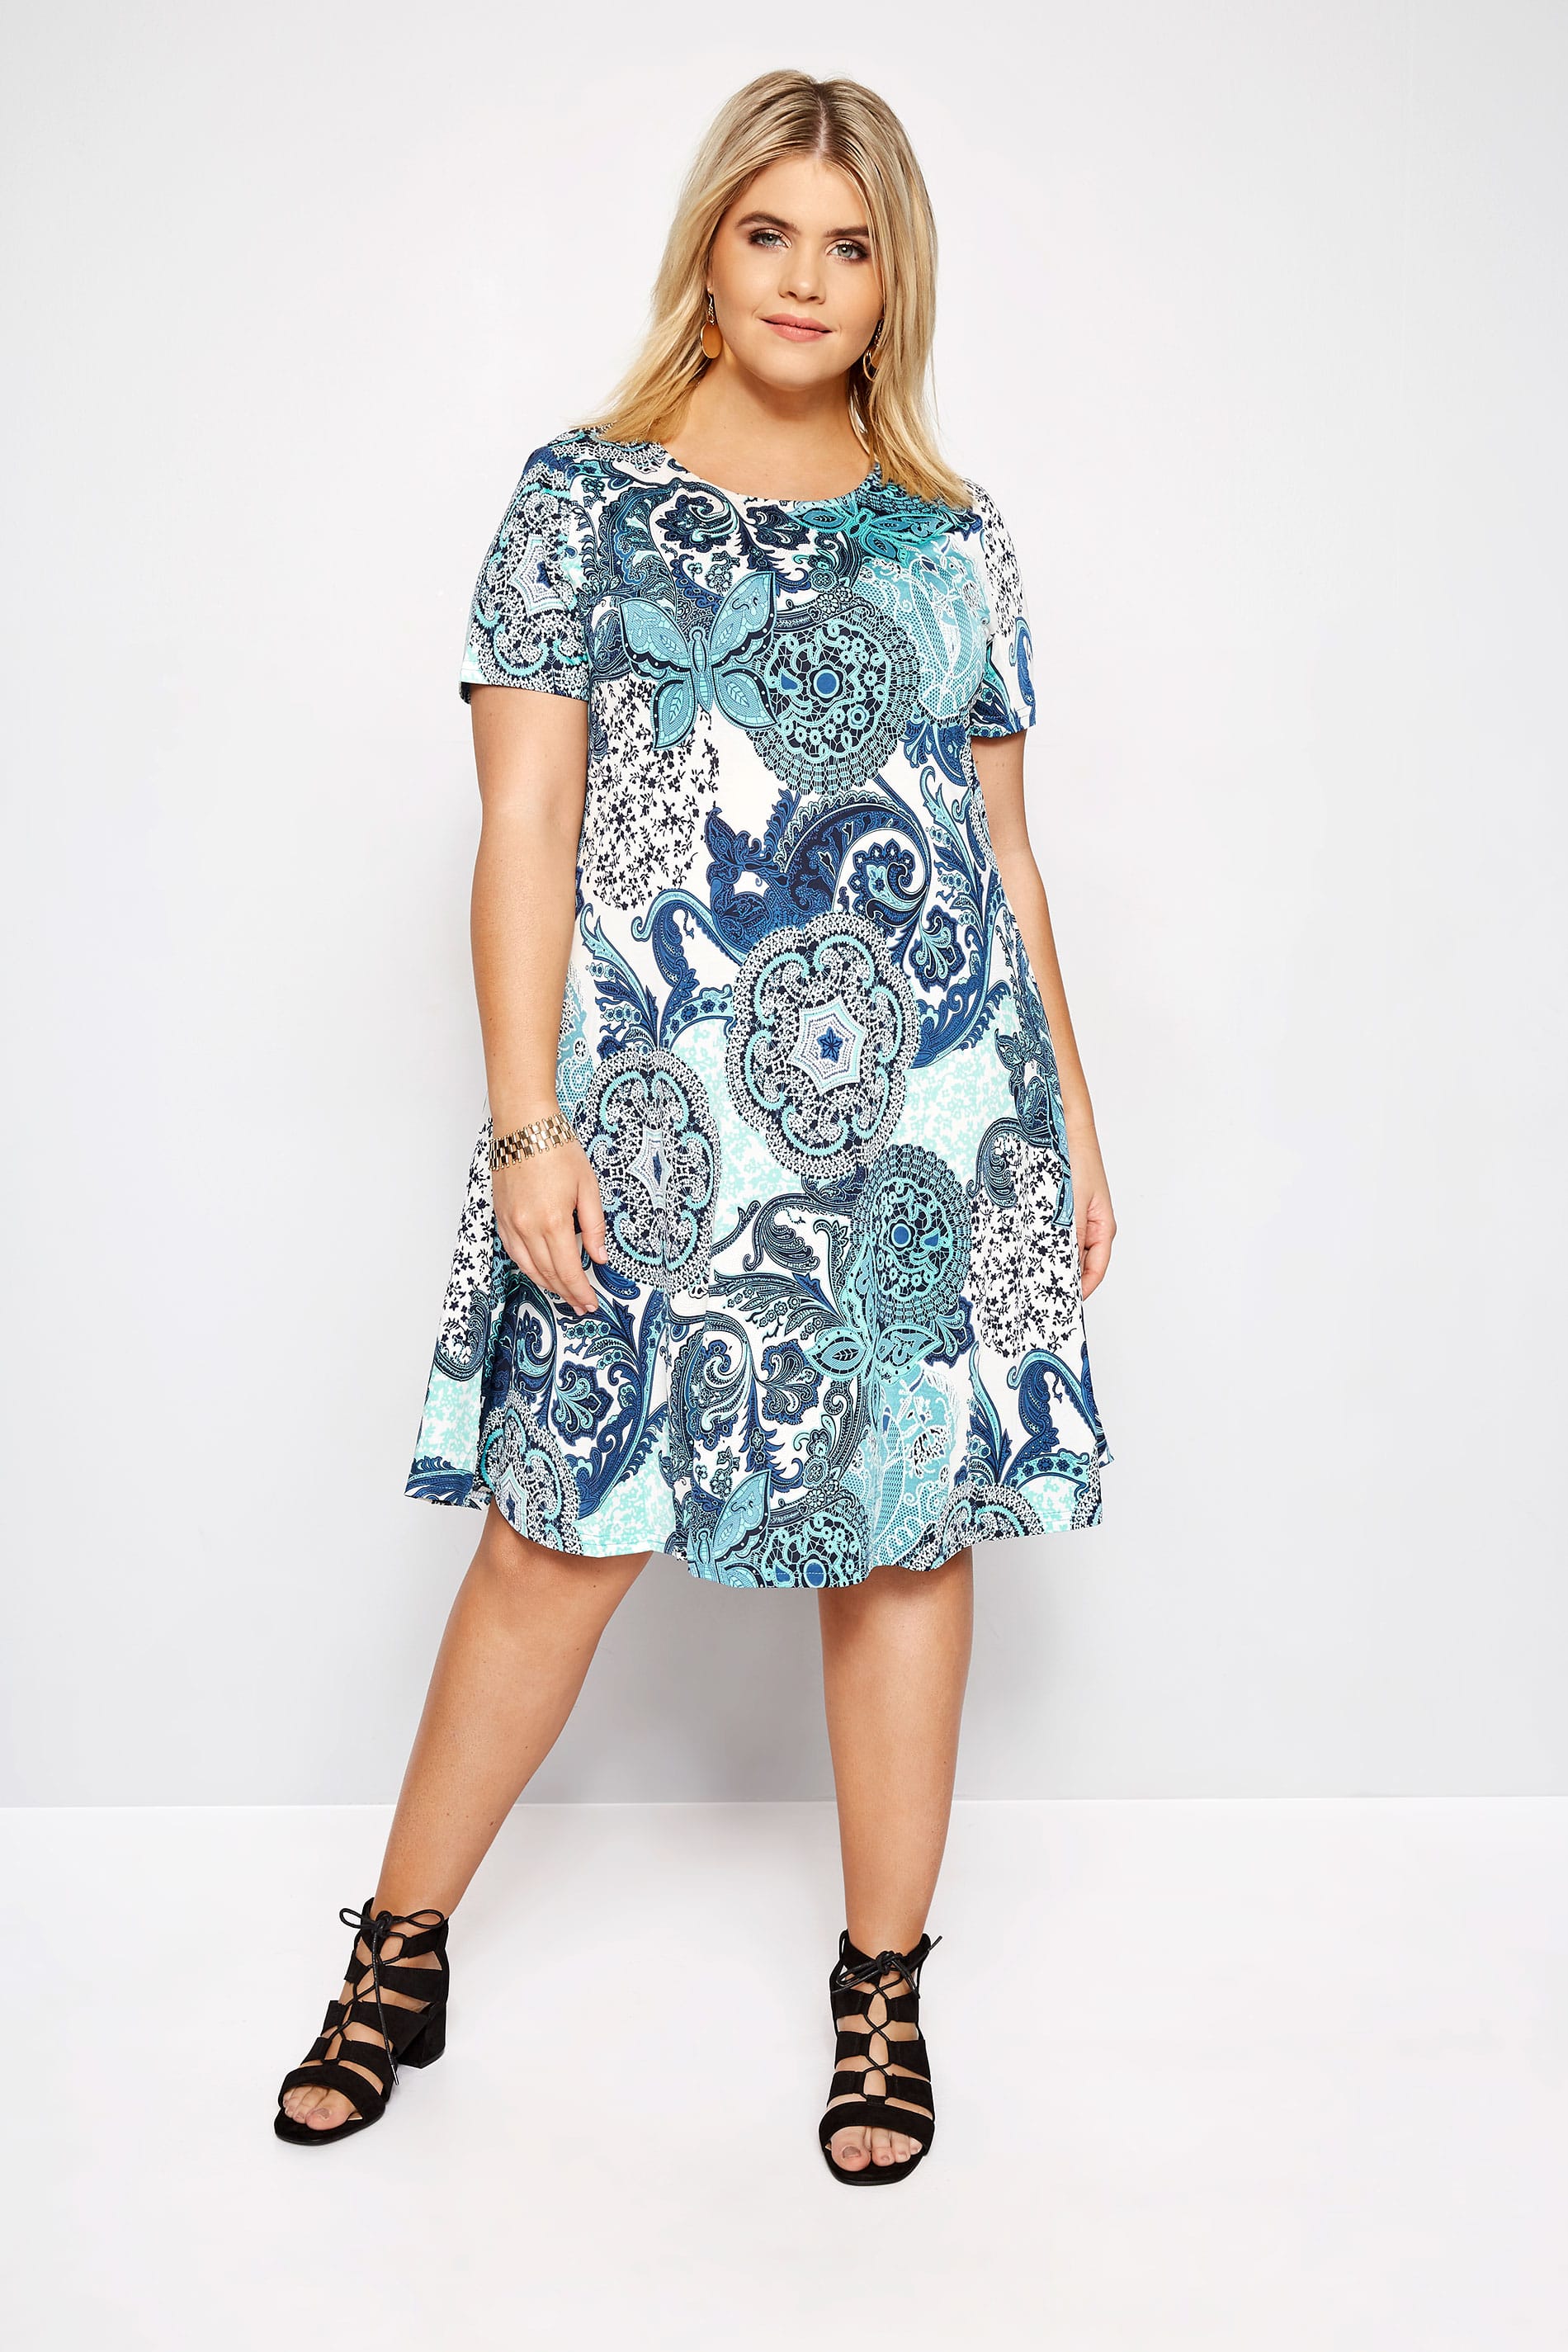 Plus Size IZABEL CURVE Blue Paisley Dress | Sizes 16 to 26 | Yours Clothing